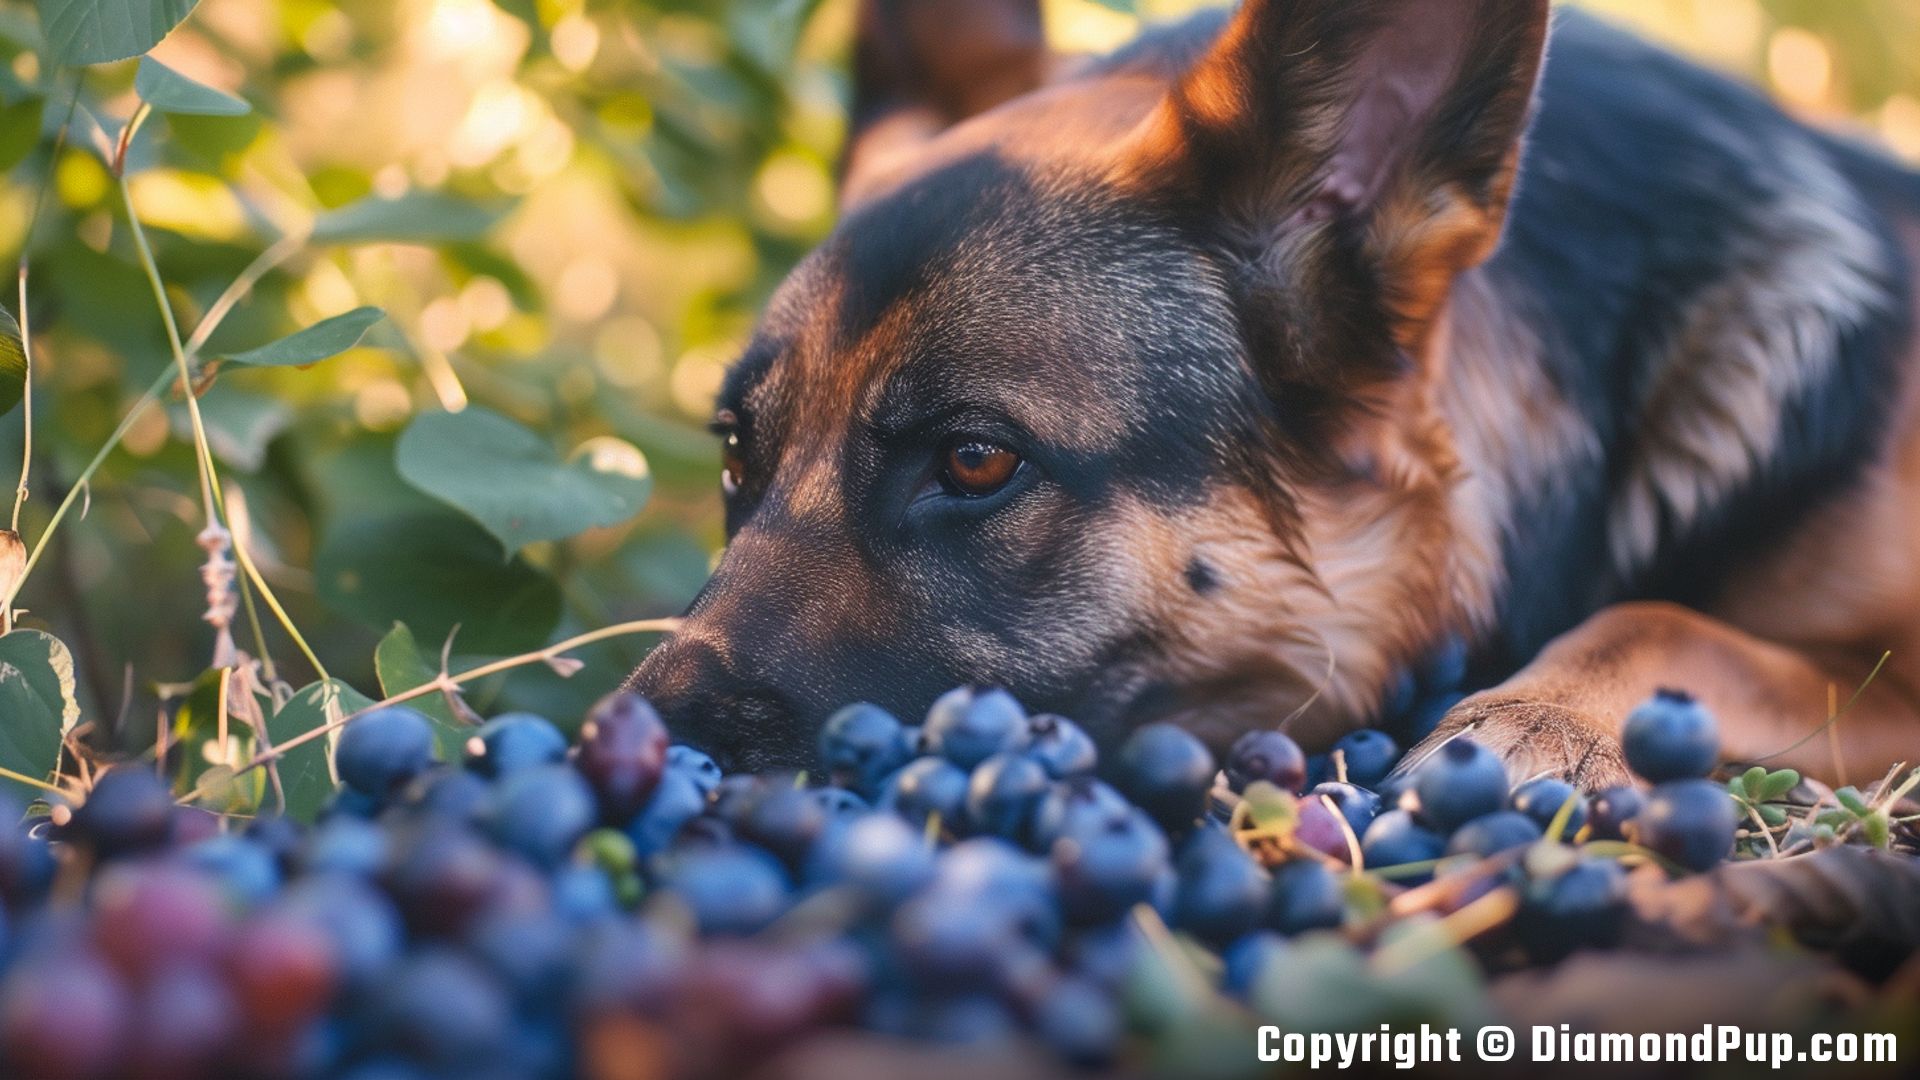 Image of German Shepherd Snacking on Blueberries